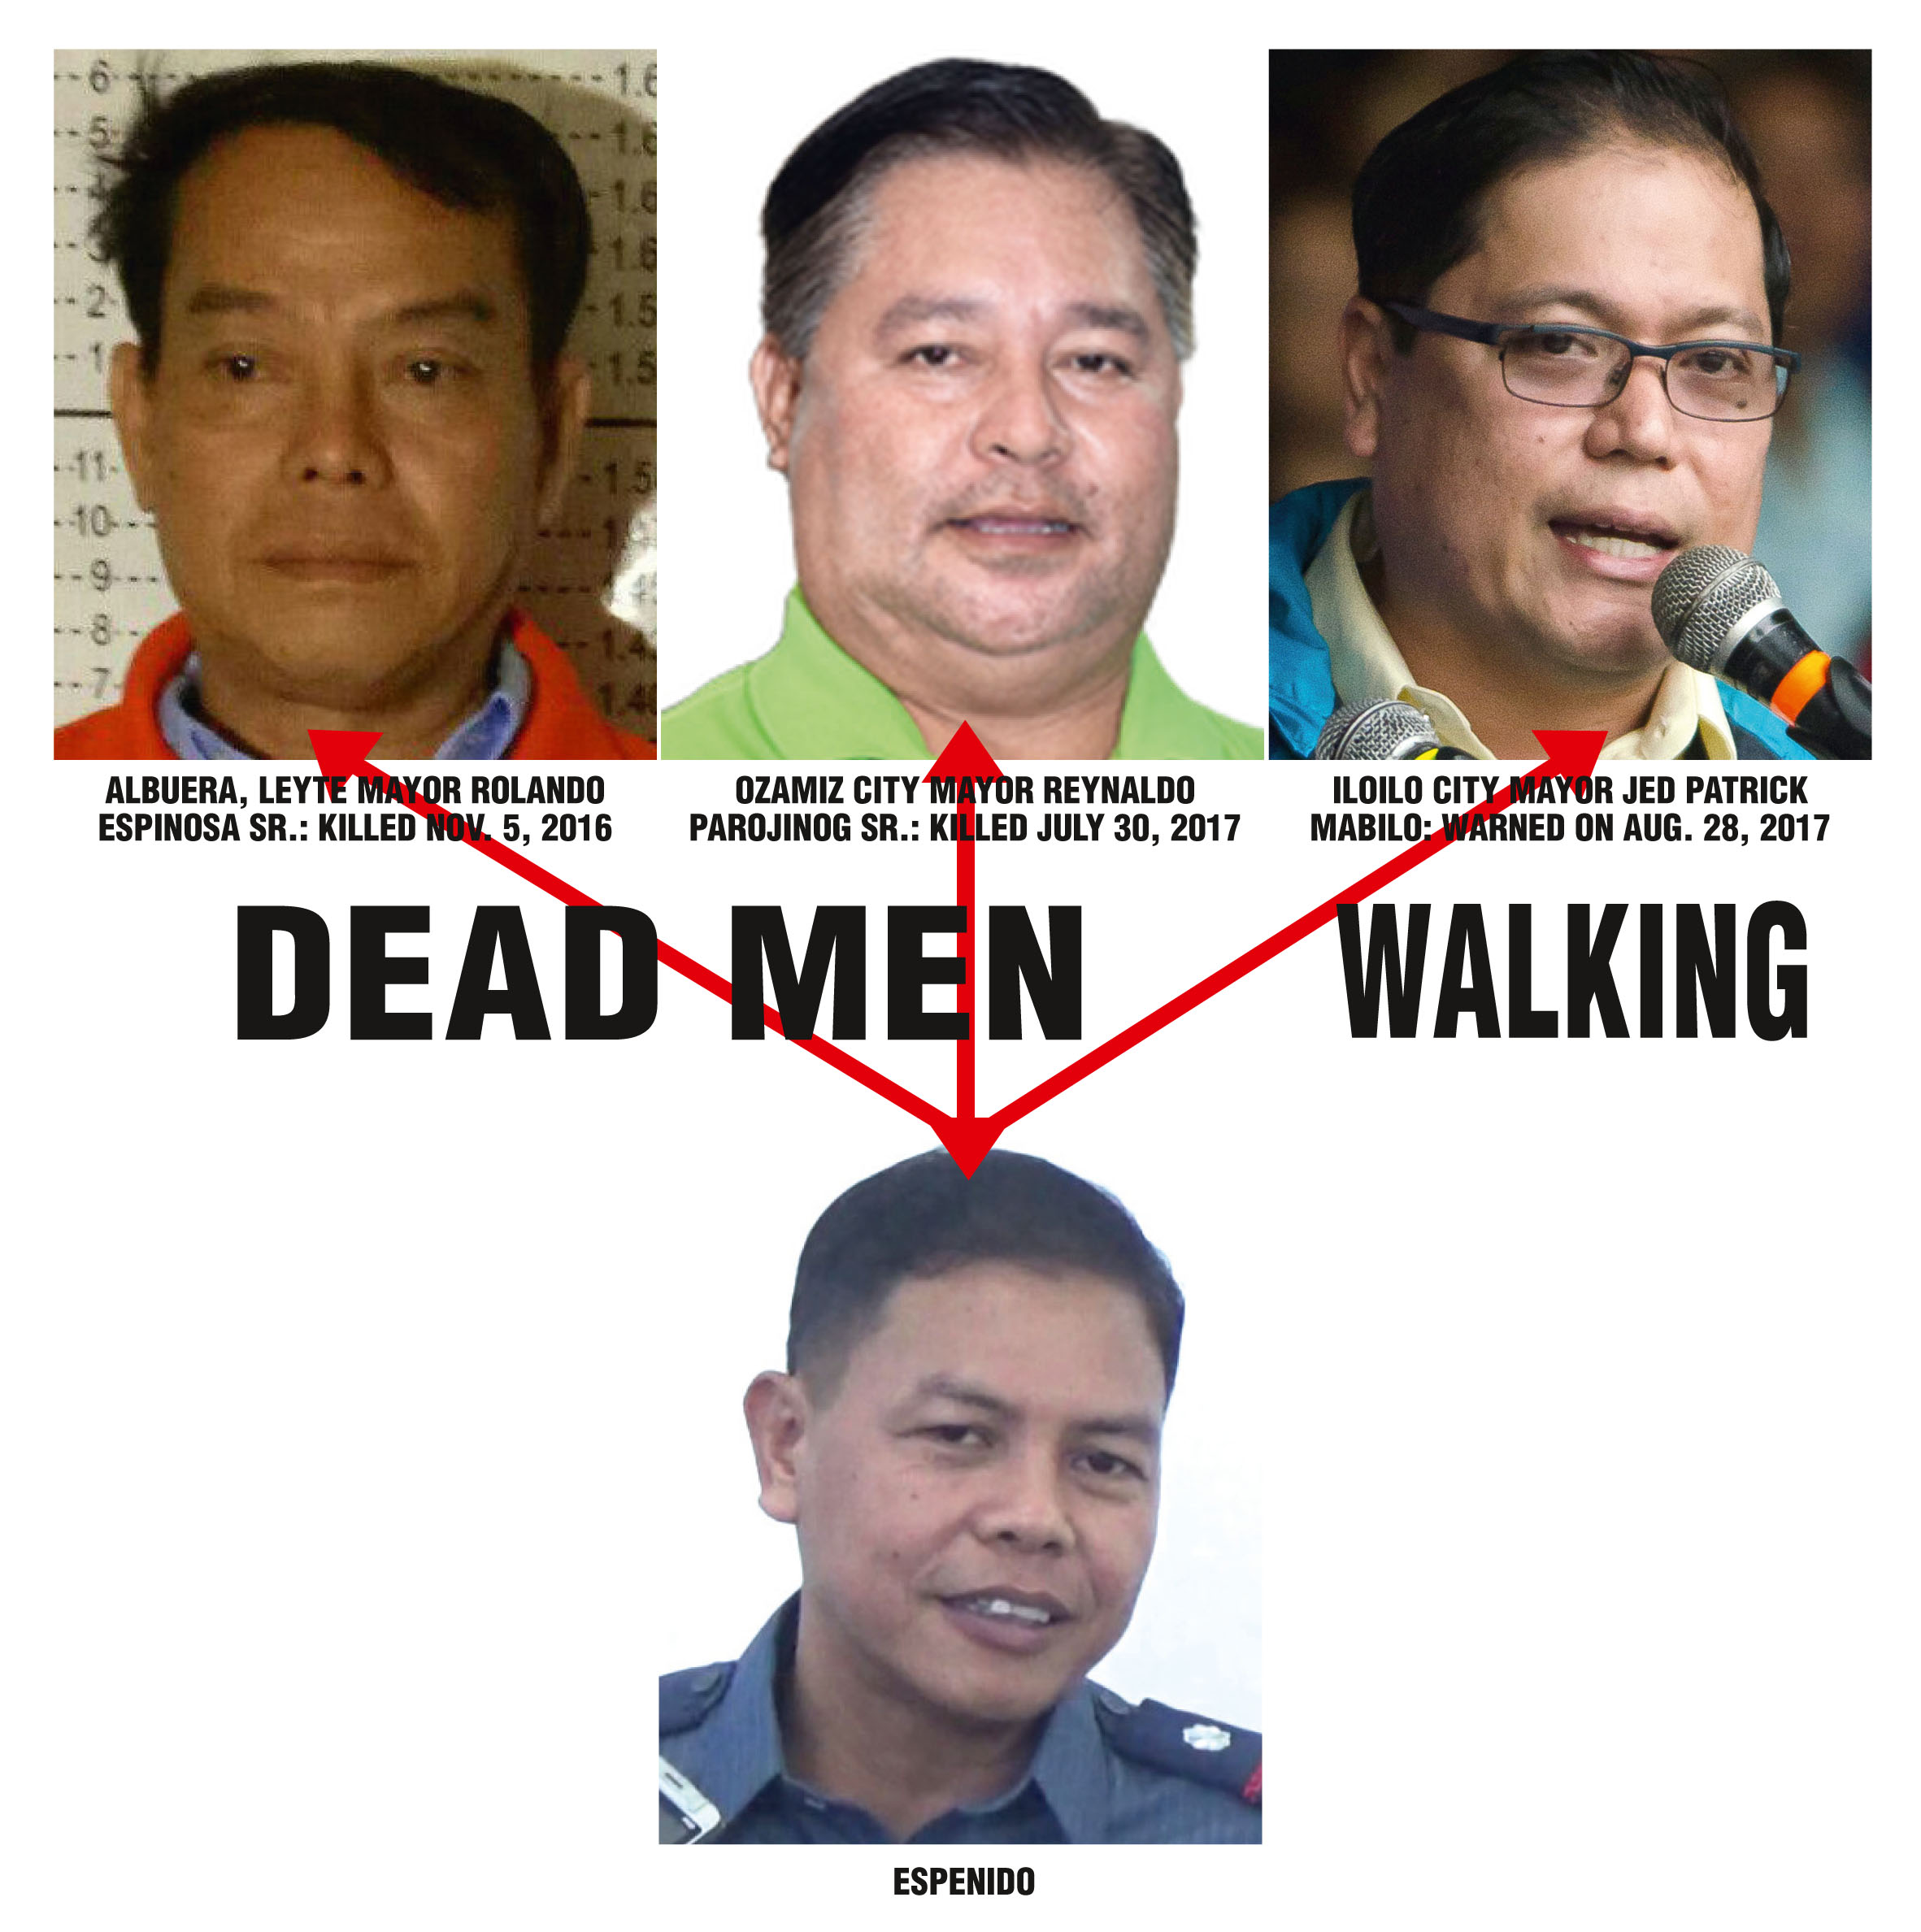 DEAD MEN WALKING